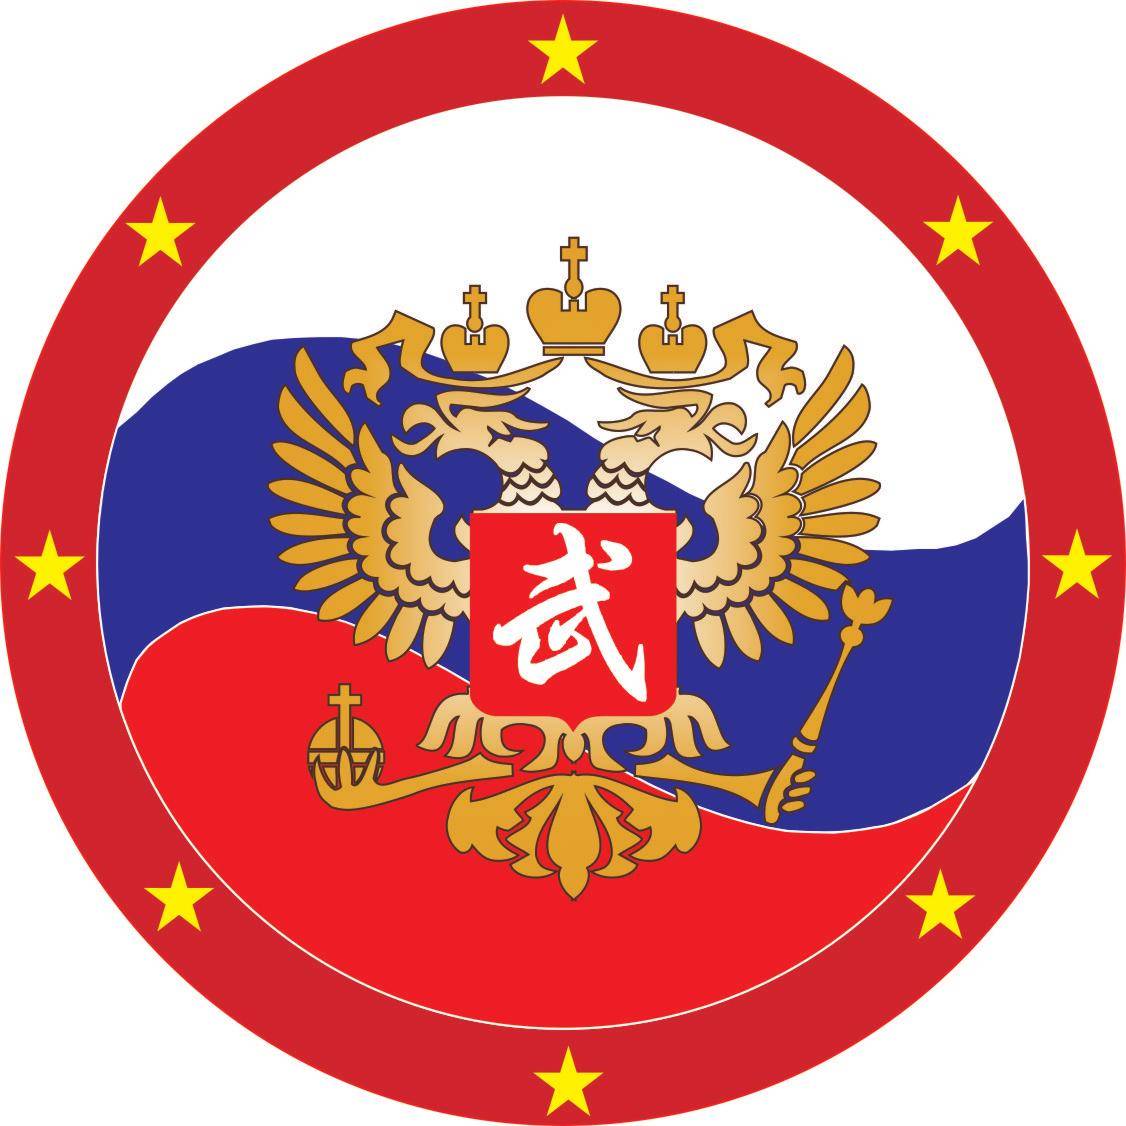 Russian Wushu Federation_logo.jpg